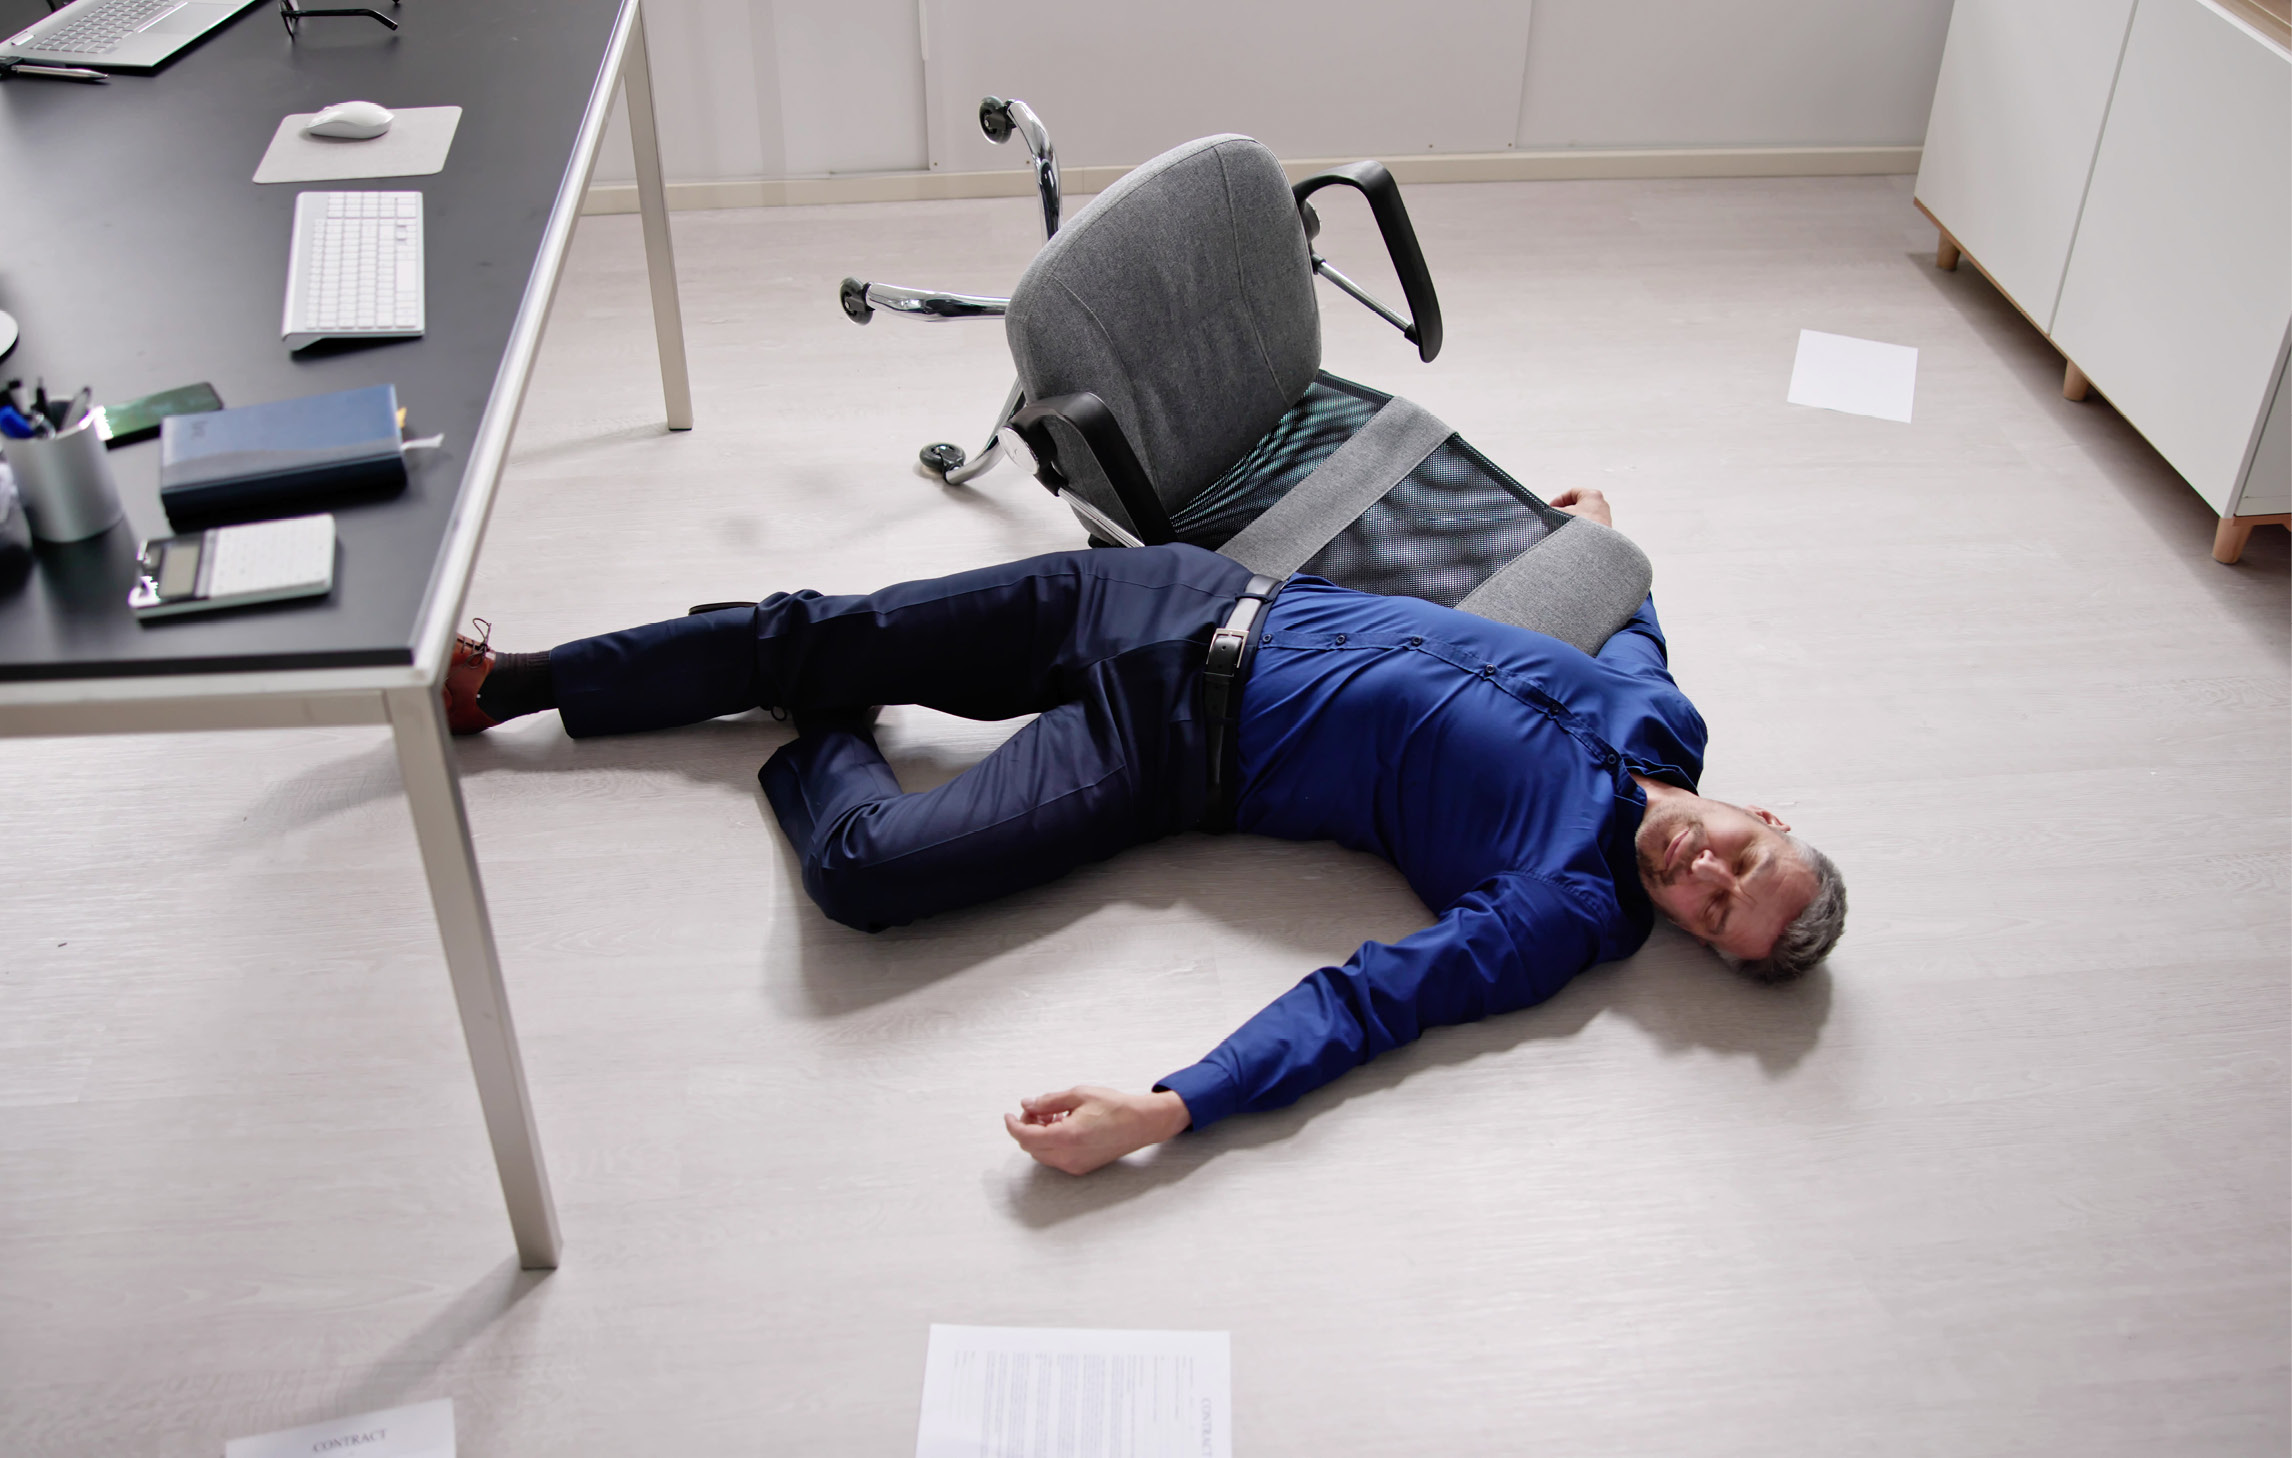 Ein Mann ist in seinem Büro zusammengebrochen und liegt bewusstlos neben seinem Schreibtischstuhl